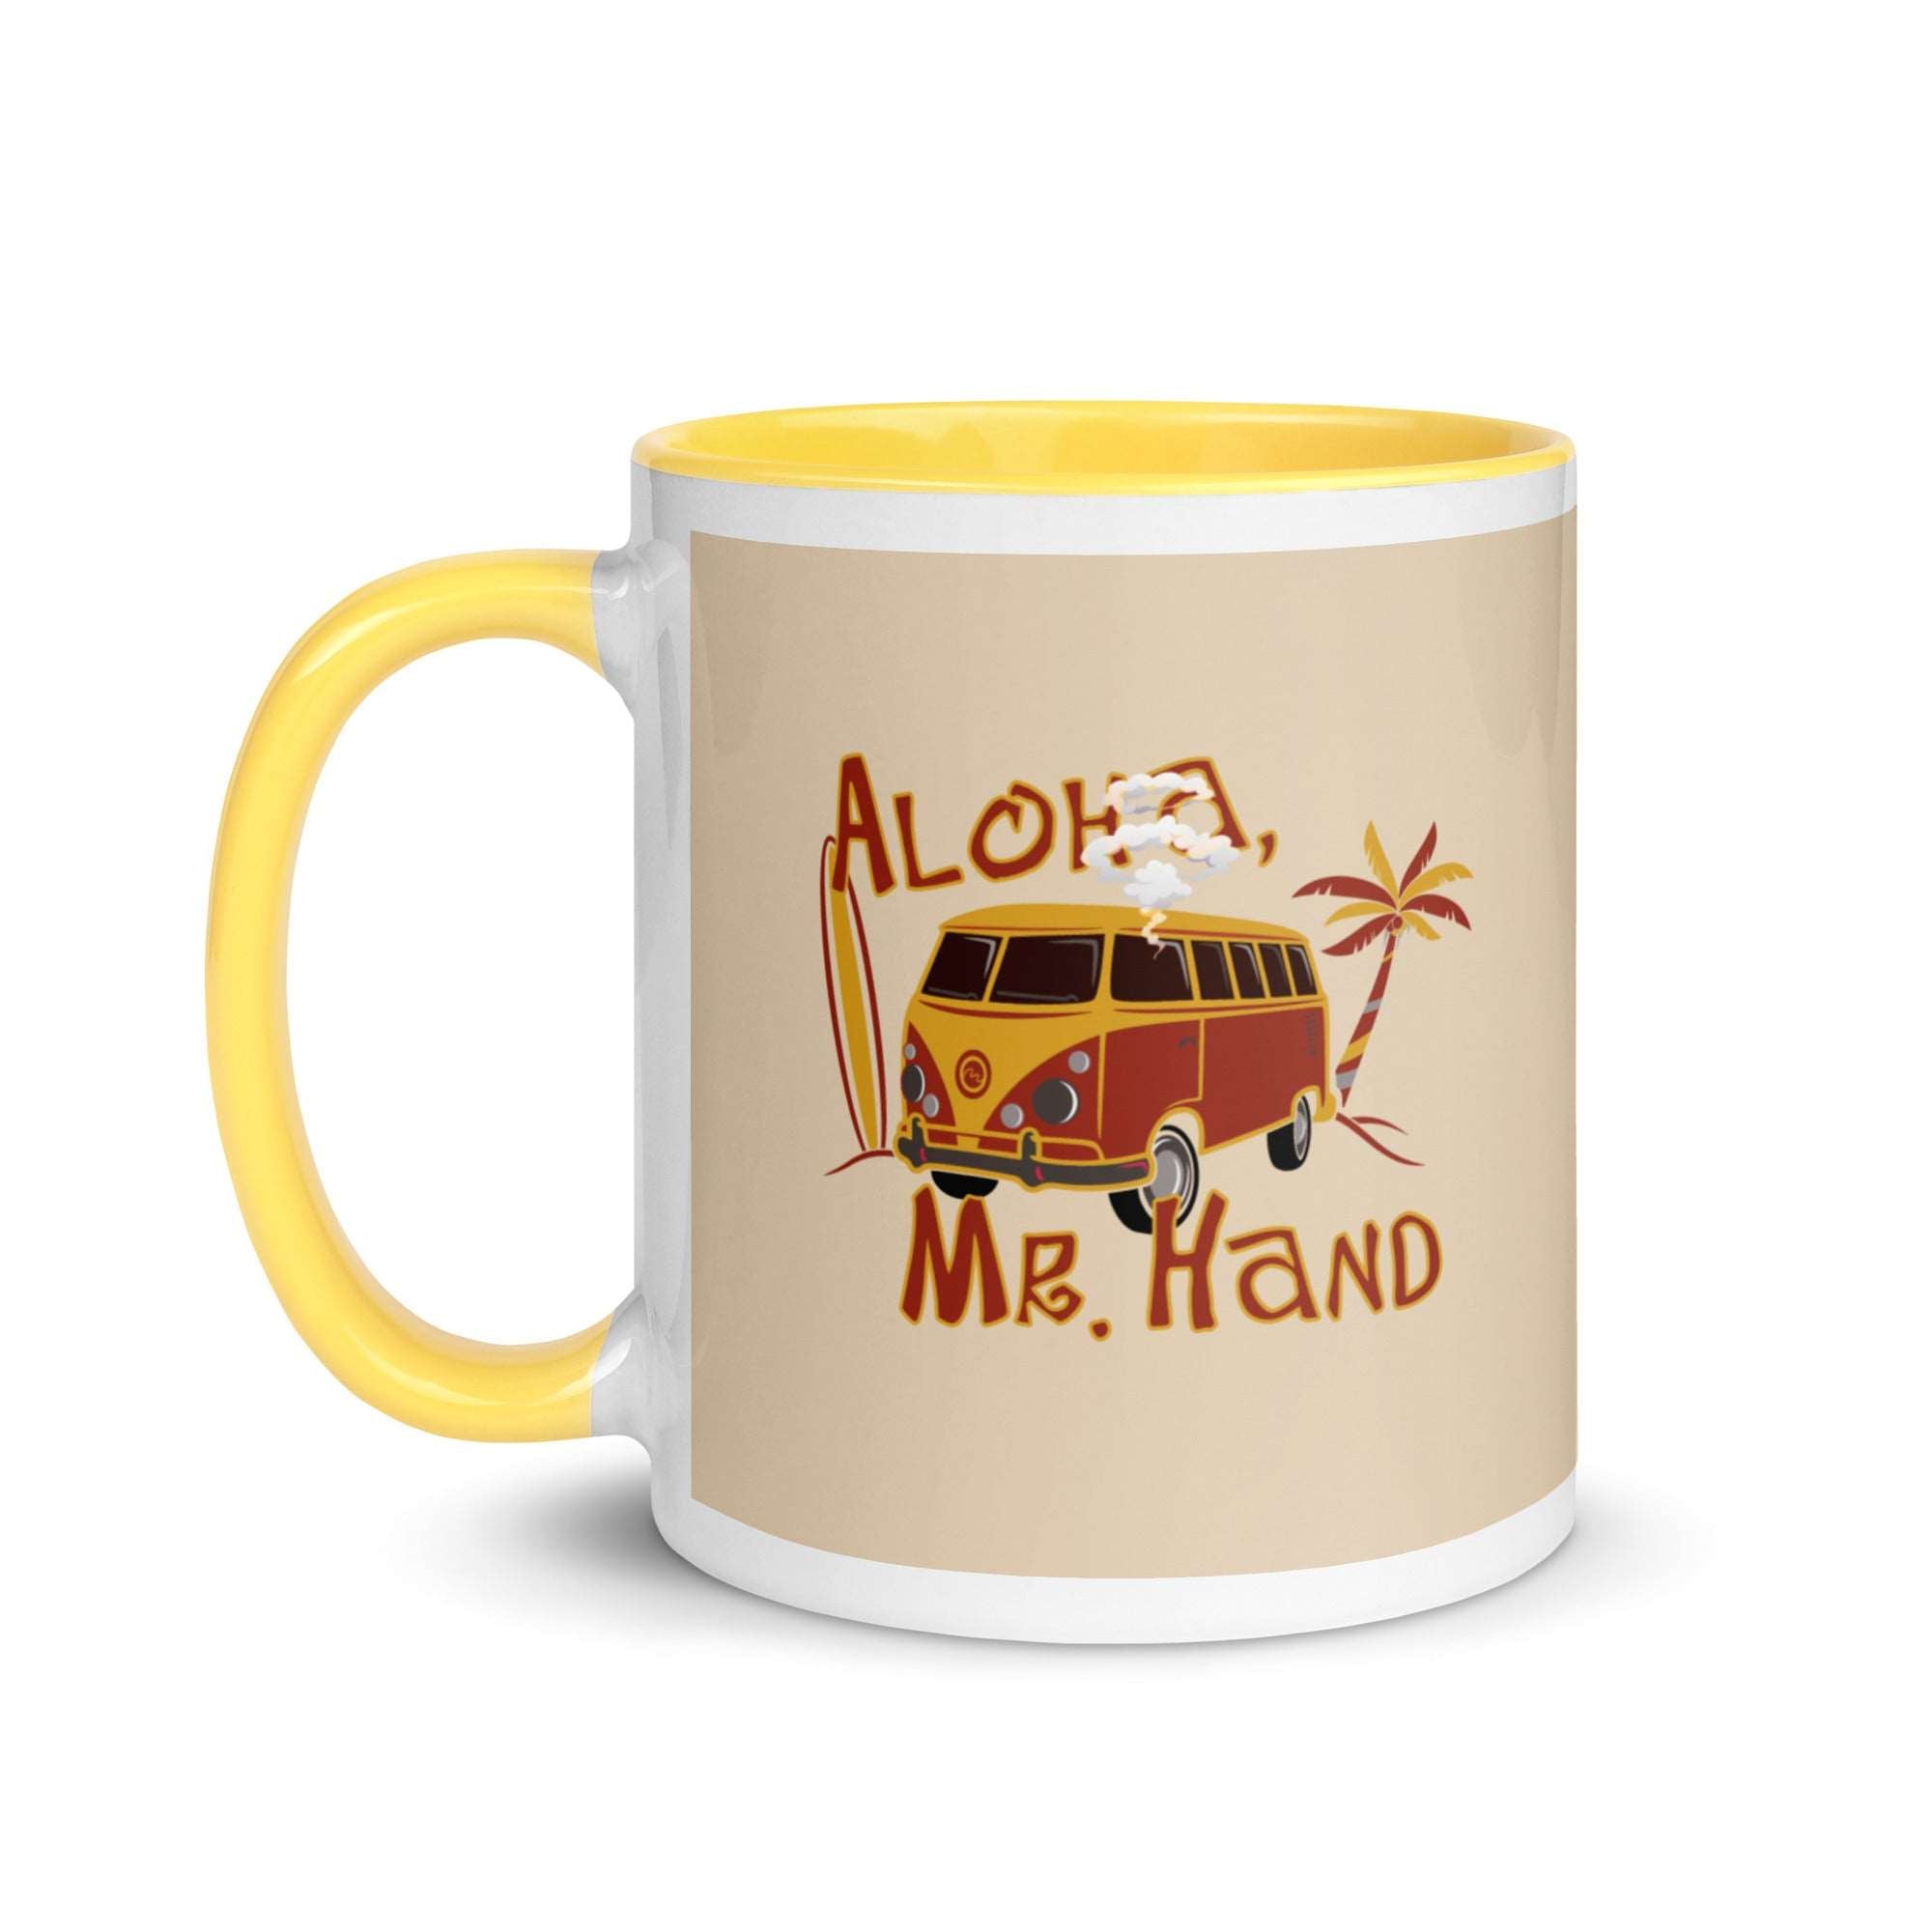 Aloha Mr. Hand! Mug with Color Inside